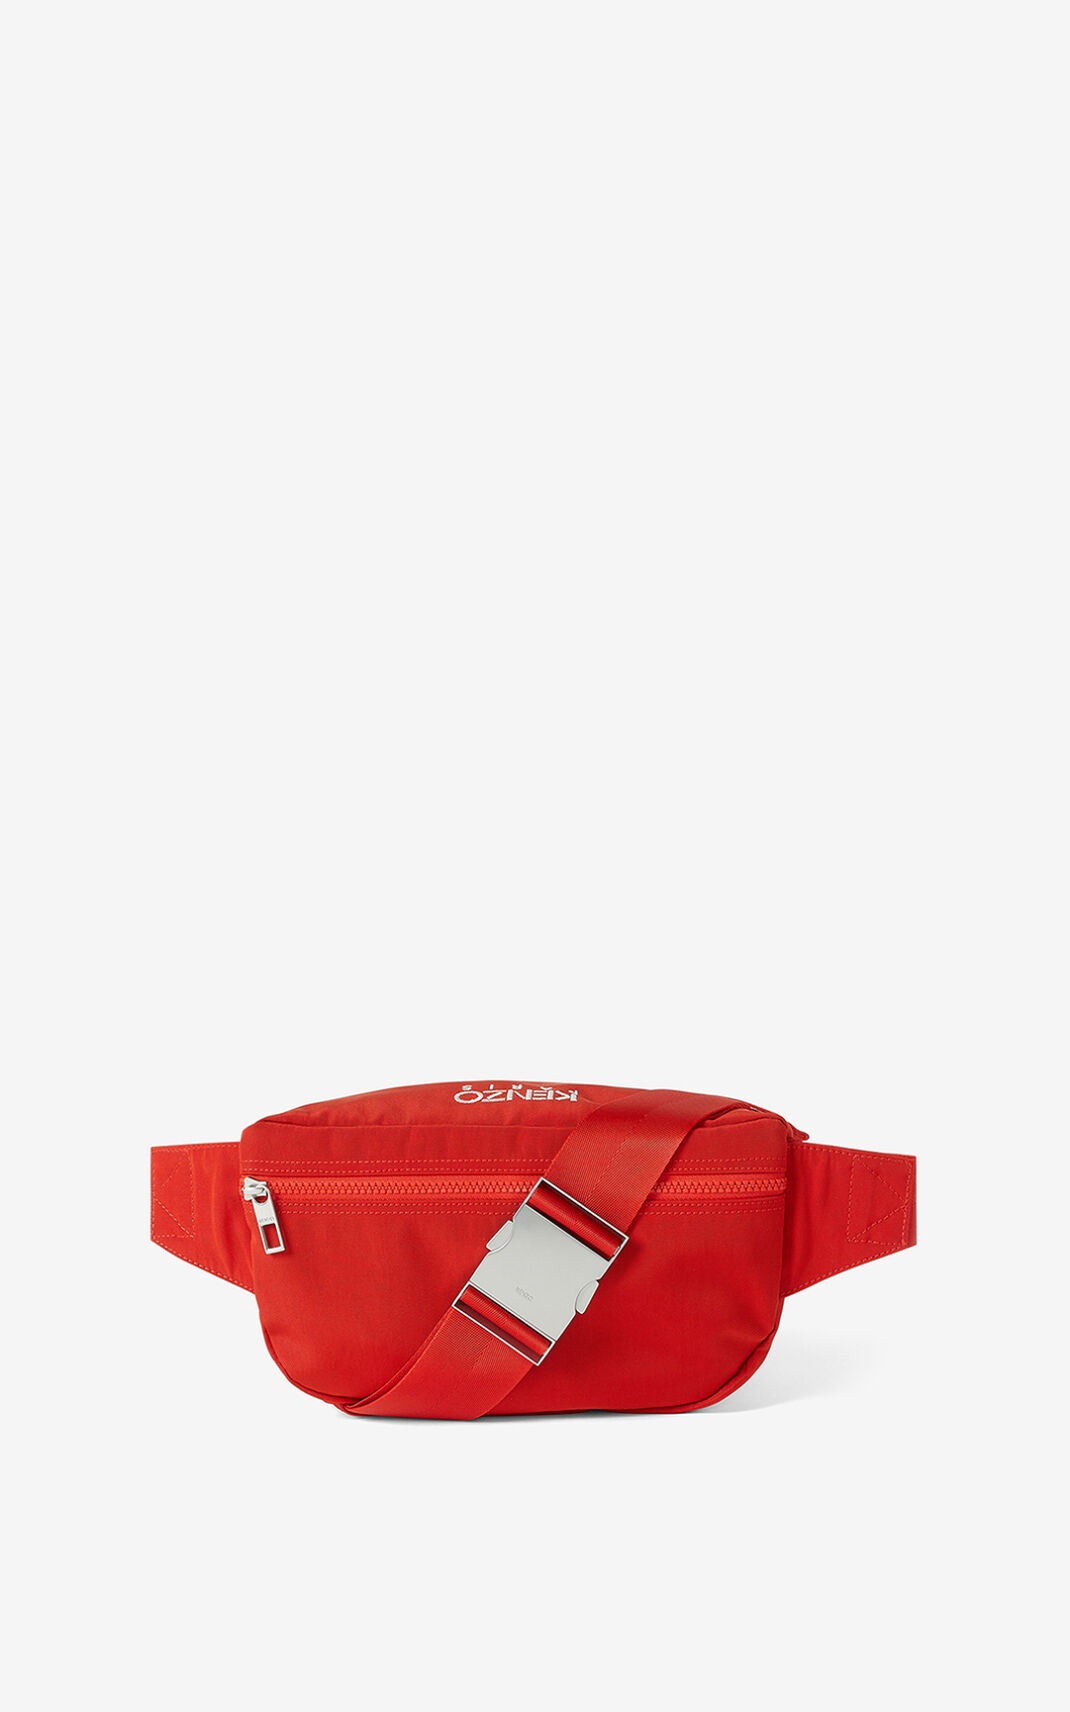 Tiger belt bag - 2